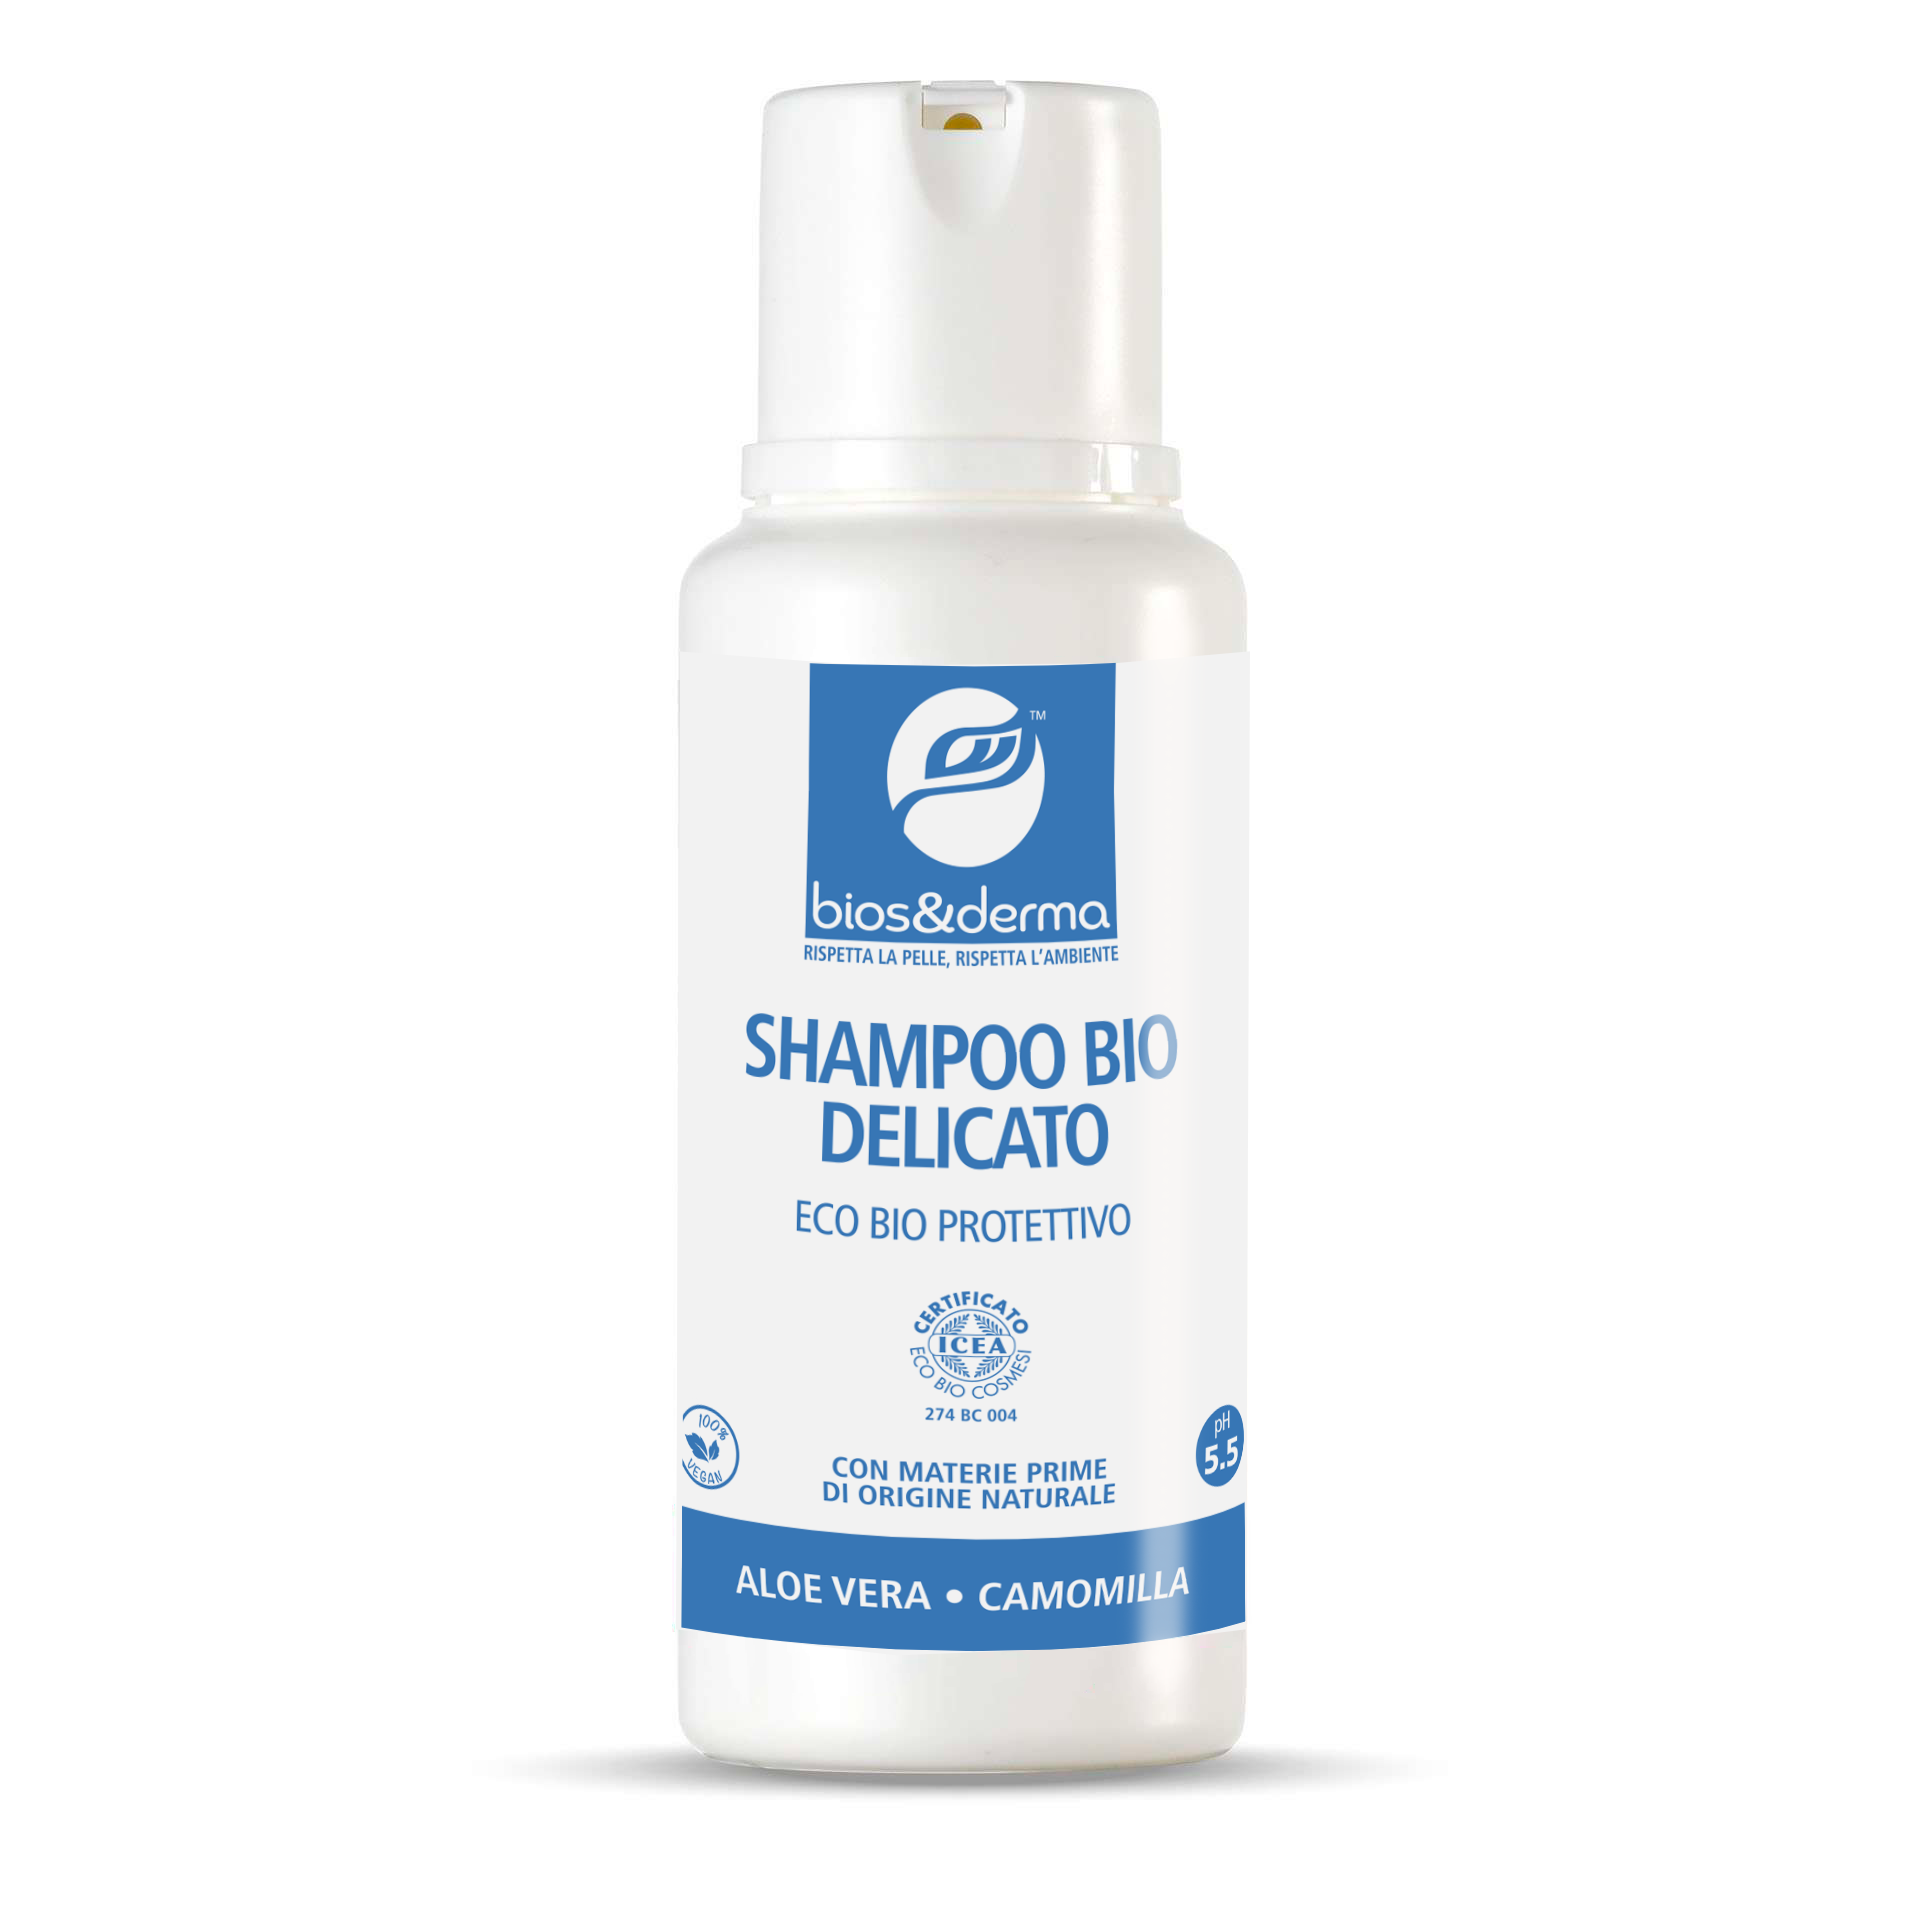 SHAMPOO BIO DELICATO (250ml) - Bios&Derma